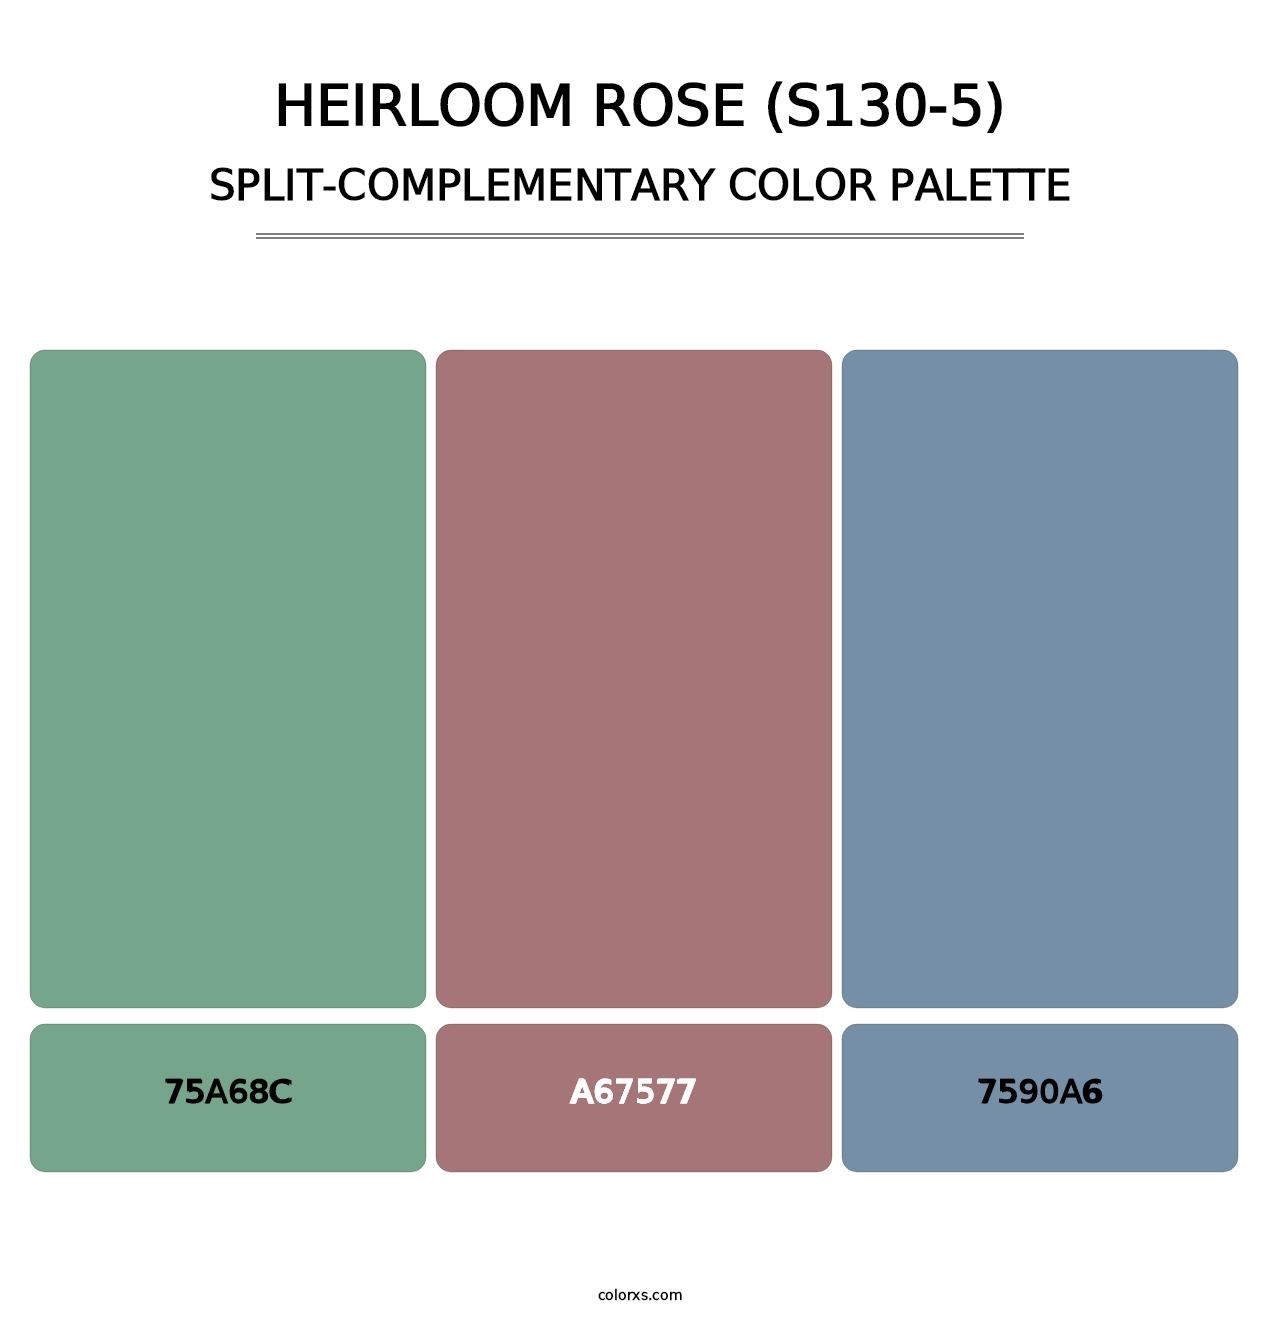 Heirloom Rose (S130-5) - Split-Complementary Color Palette